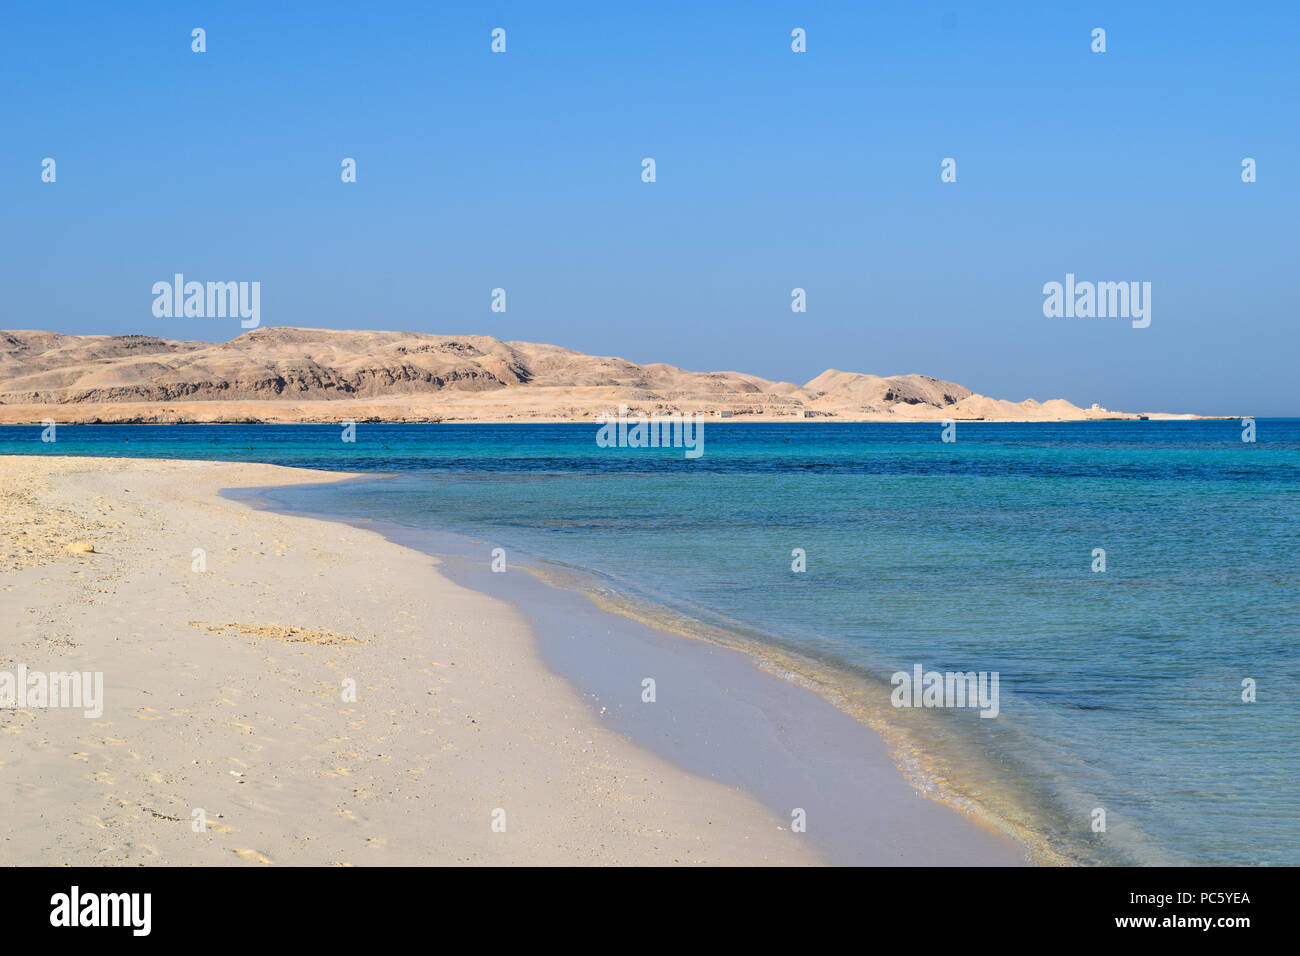 Plage idyllique de l'île de Mahmya avec de l'eau turquoise, l'Égypte Banque D'Images